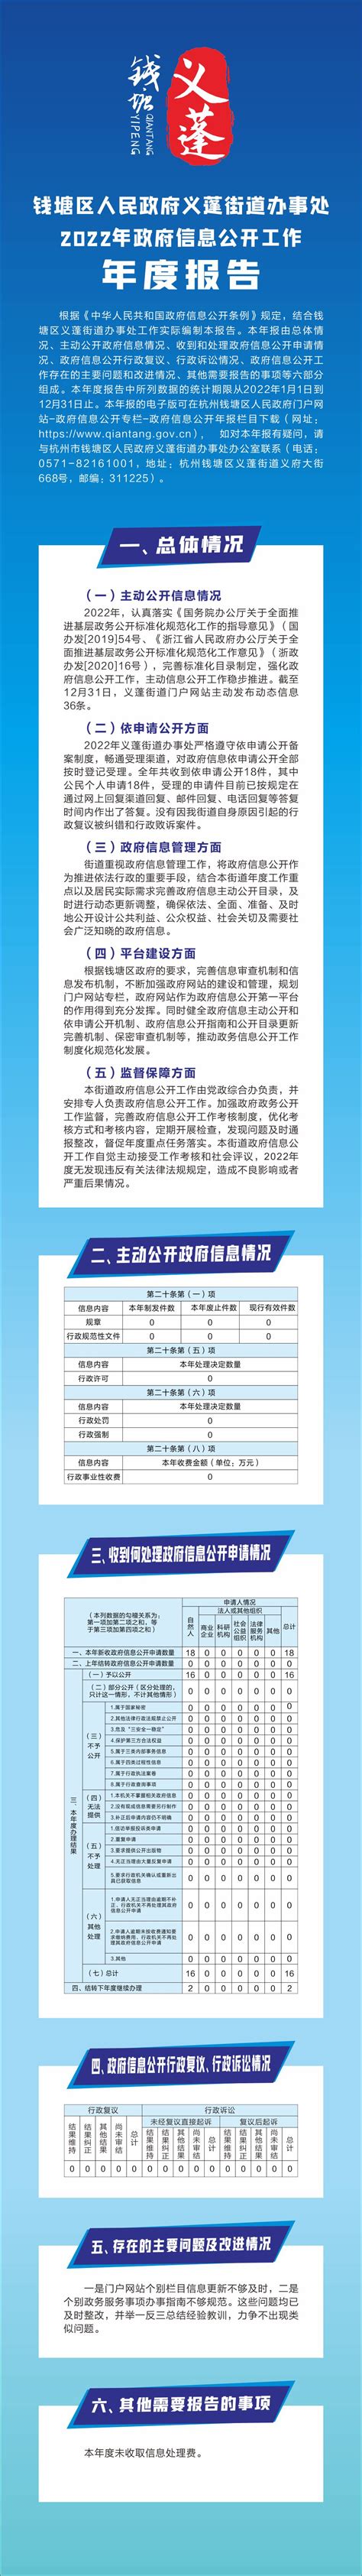 钱塘区人民政府义蓬街道办事处2022政府信息公开年度报告